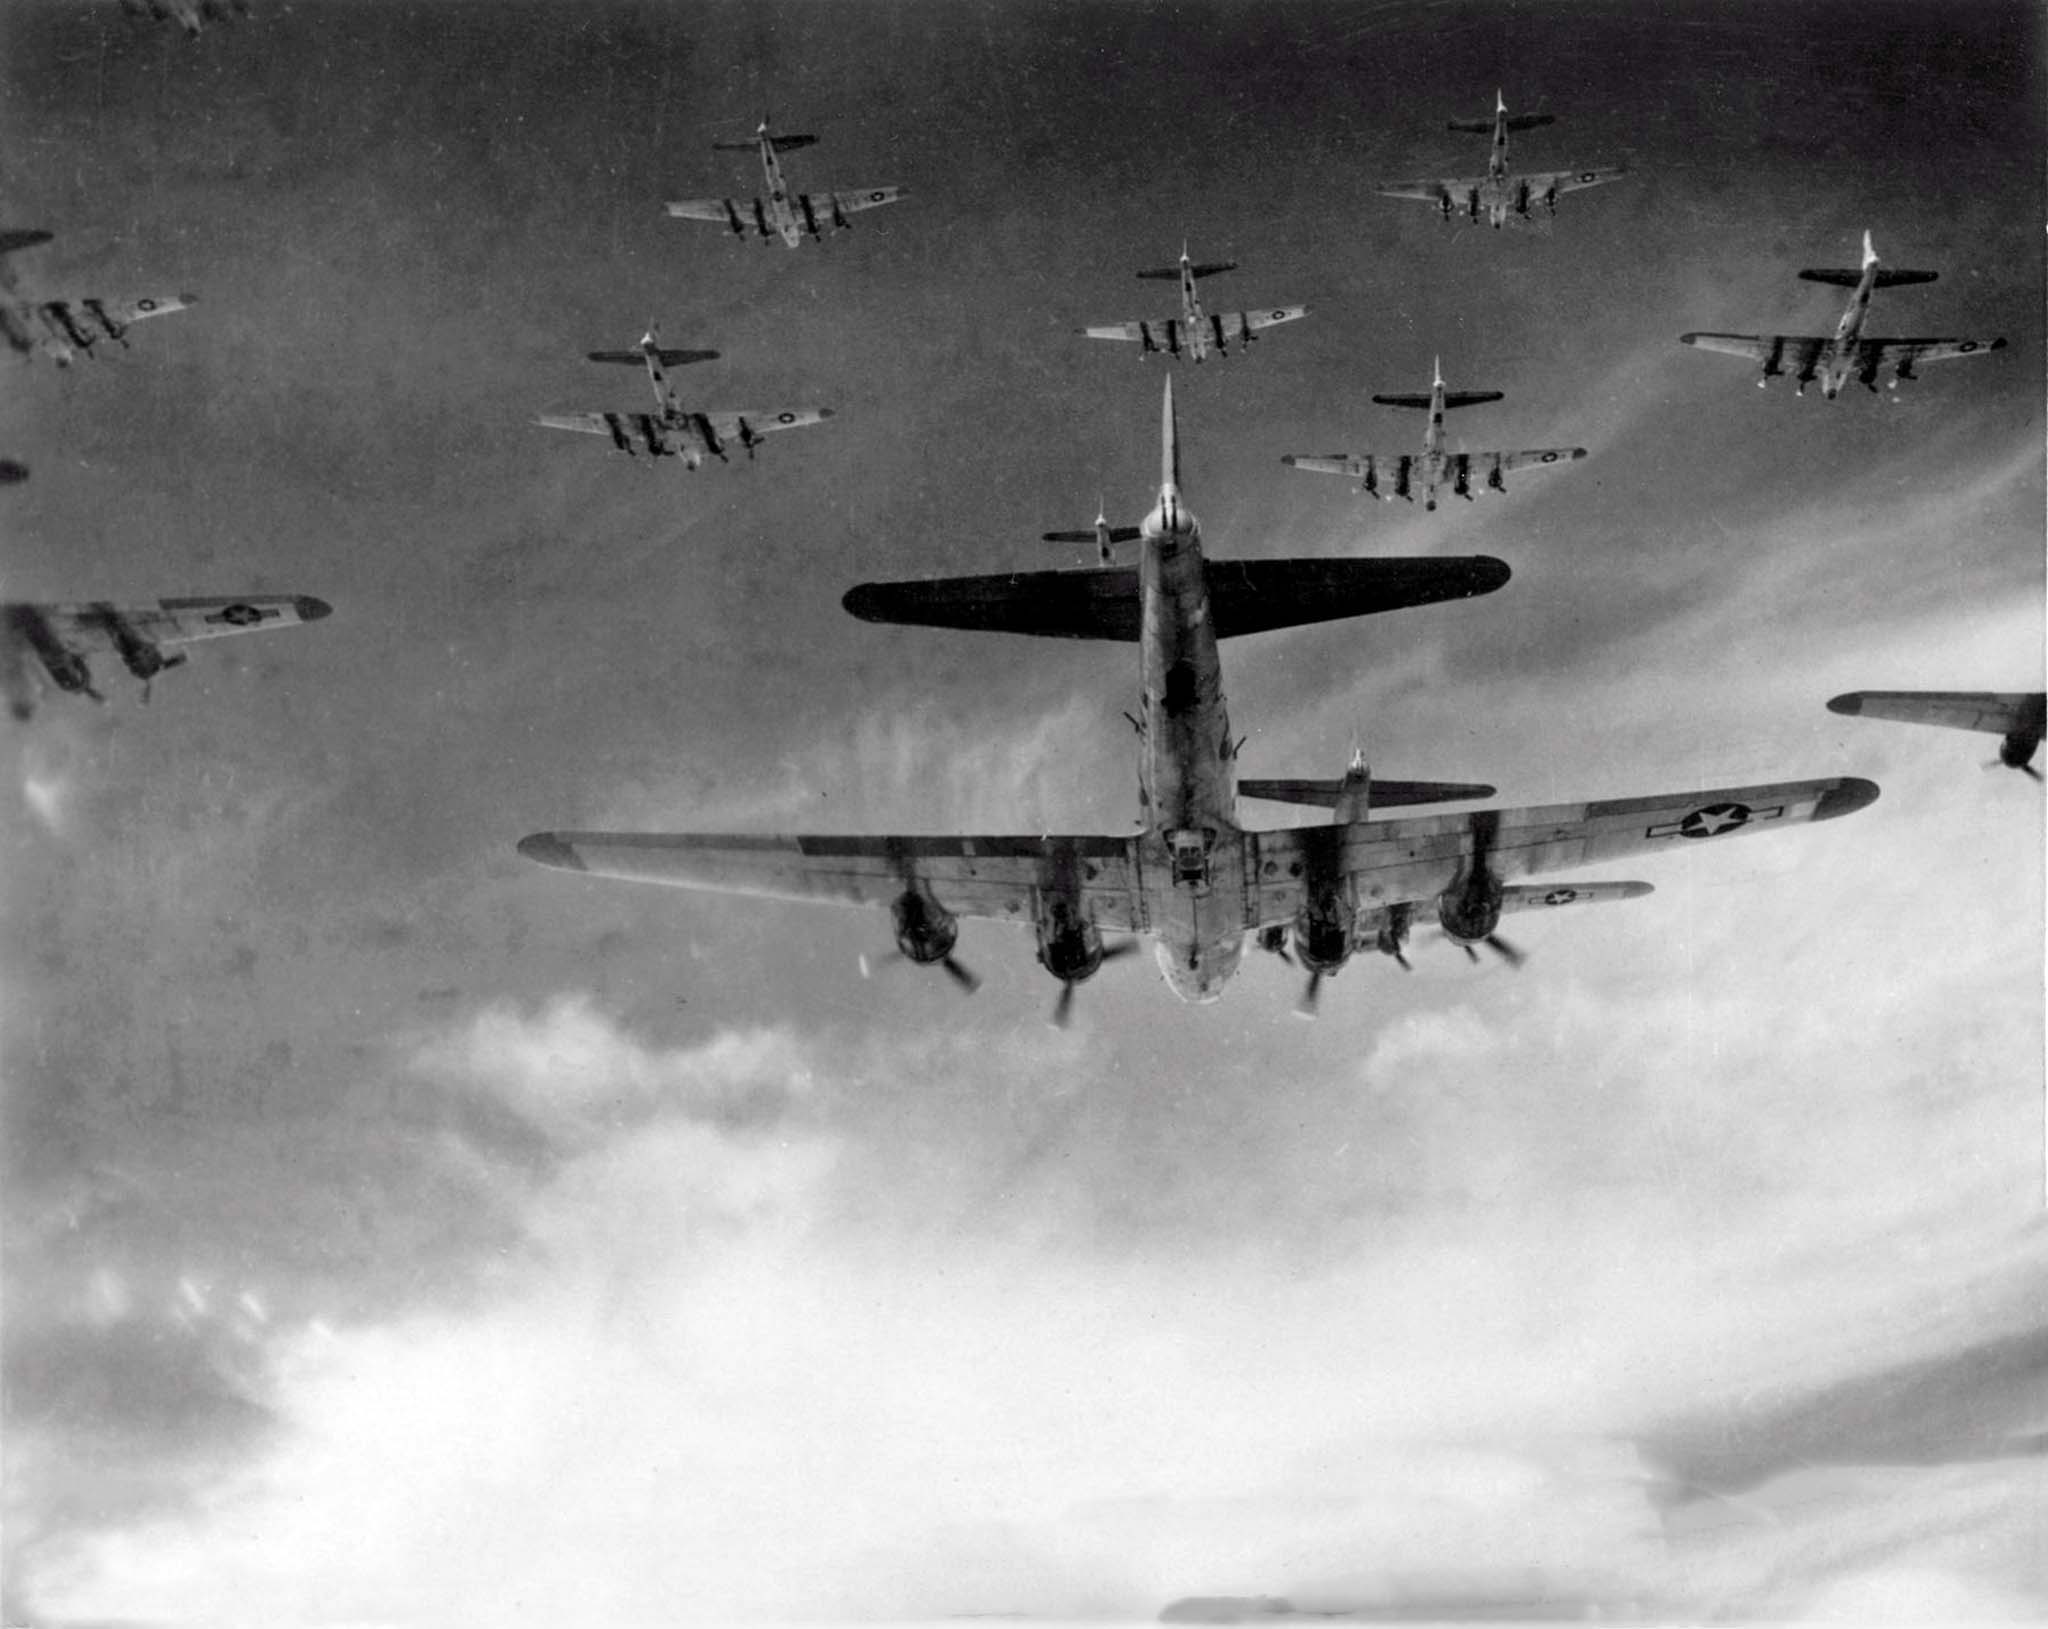 B-17: boeing flying fortress, летающая крепость, бомбардировщик б-17, история появления самолёта, вооружение